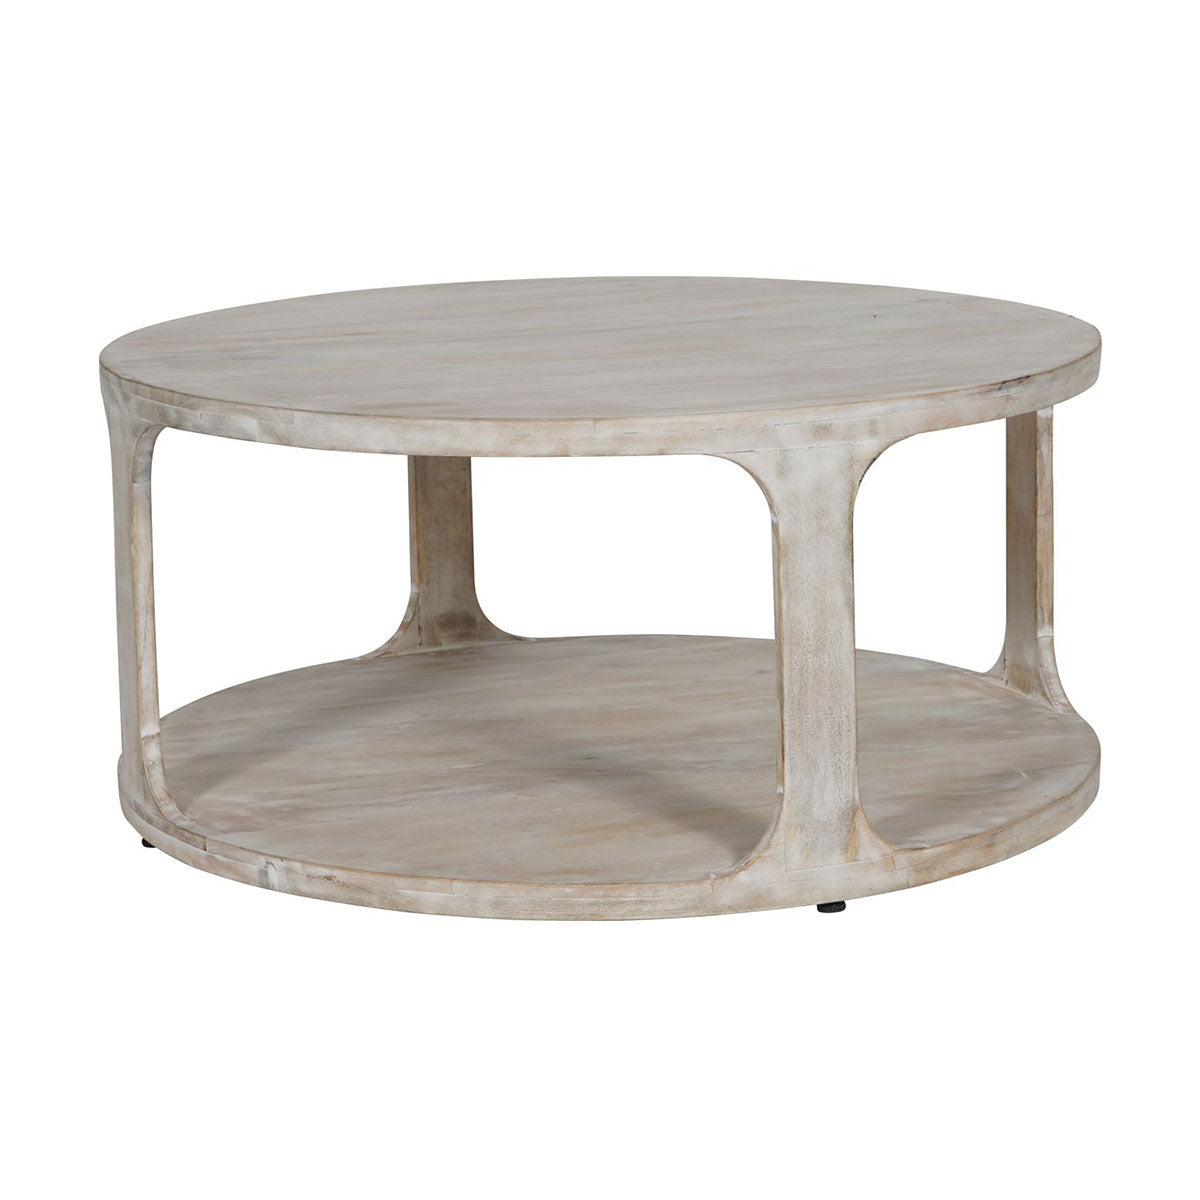 Table basse en bois massif sculpté Beadnell au fini blanchi à la chaux